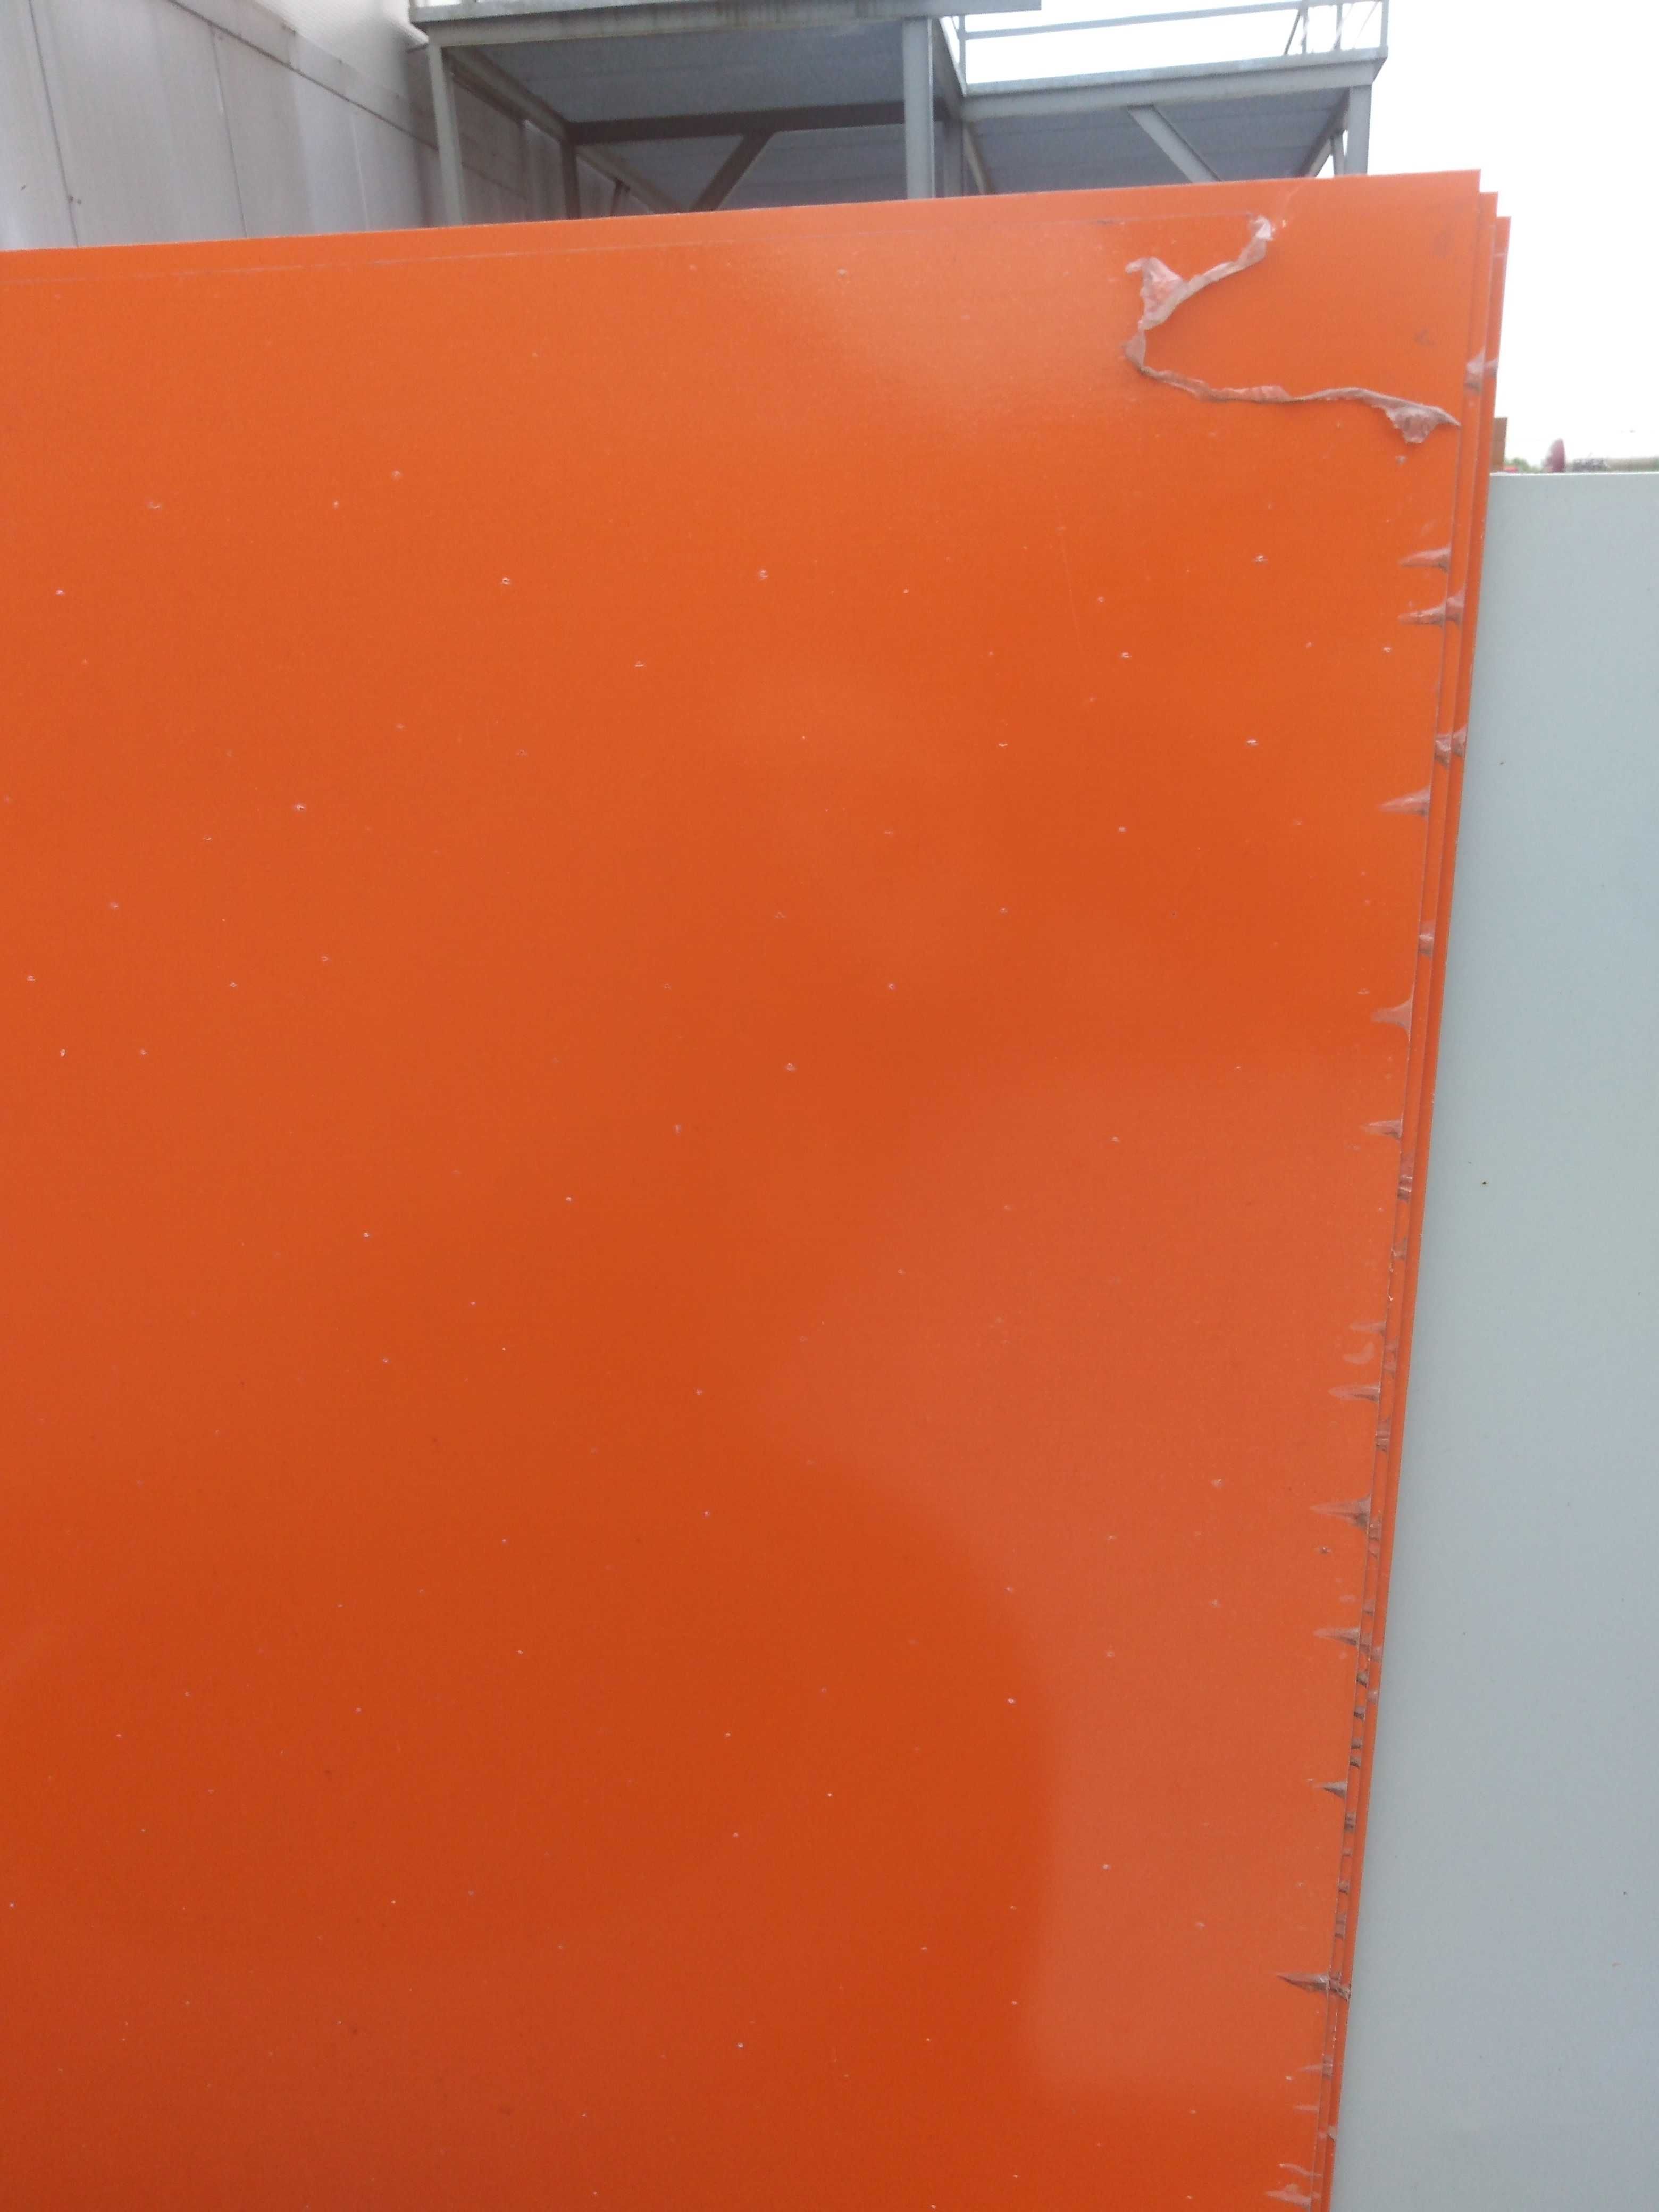 blacha płaska pomarańczowa 0,5 mm przybliżony RAL 2009 3,00 m x 1,25 m